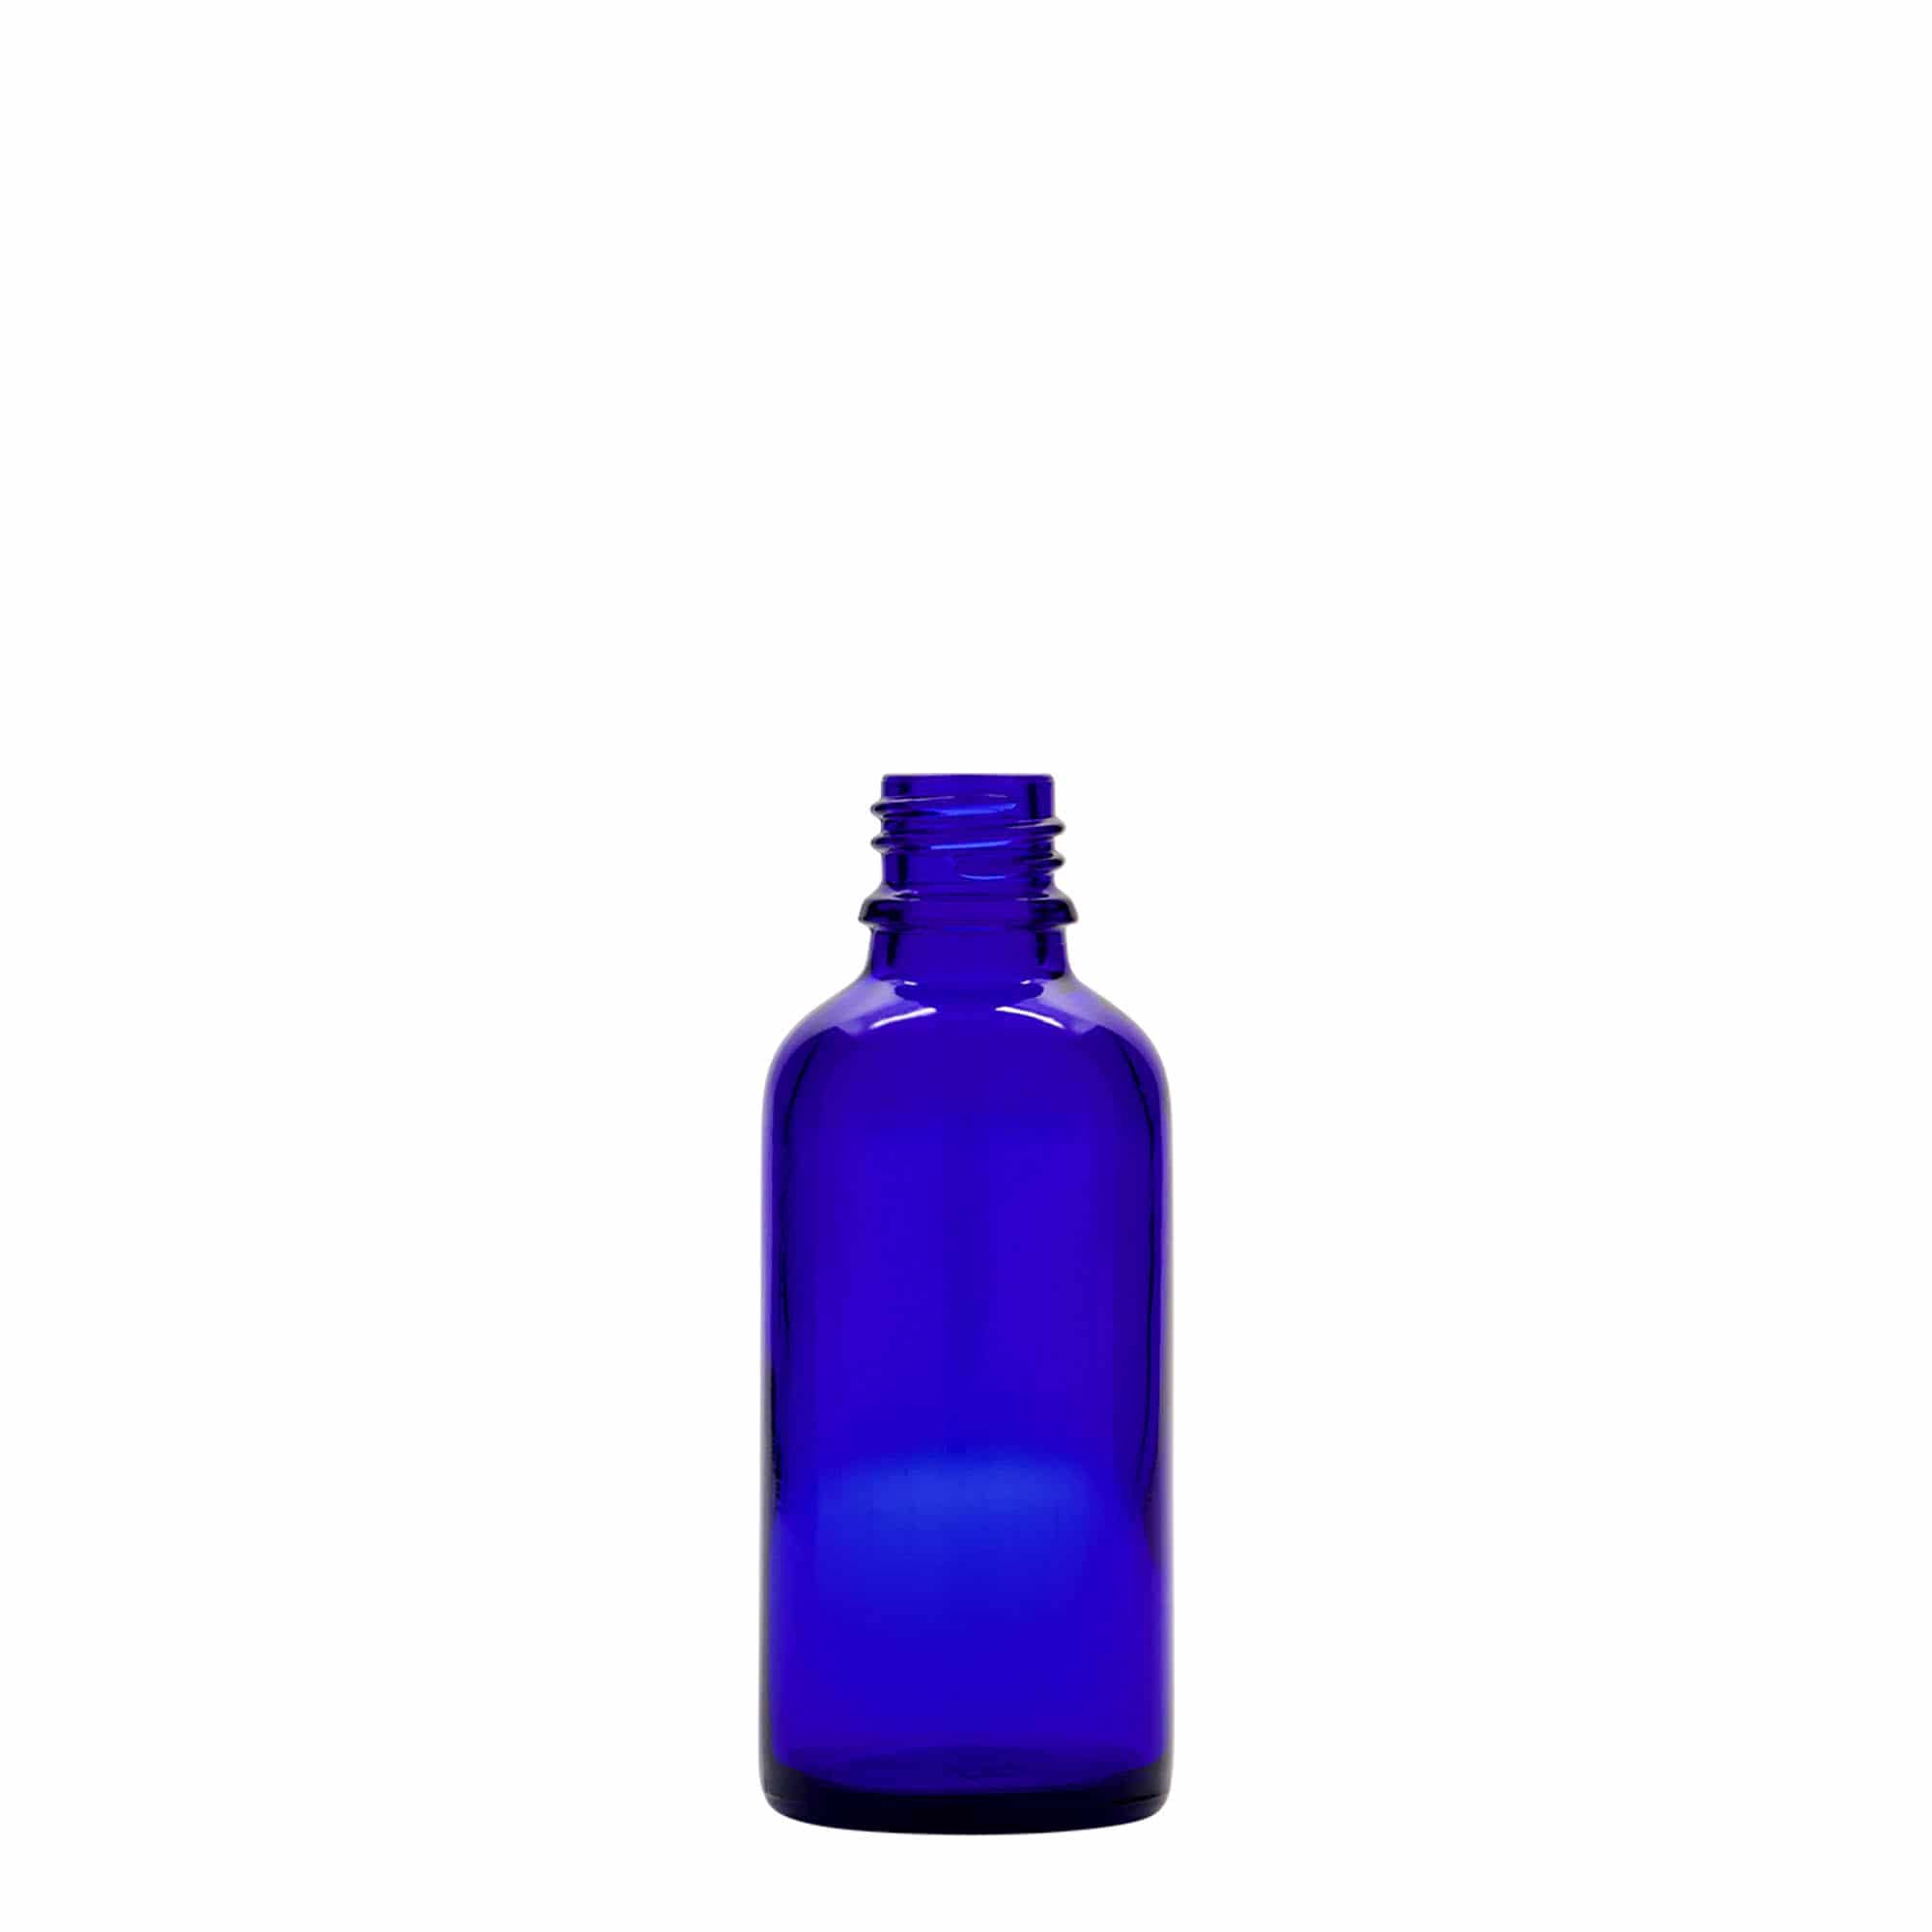 50 ml spray-pullo lääke, lasi, laivastonsininen, suu: DIN 18